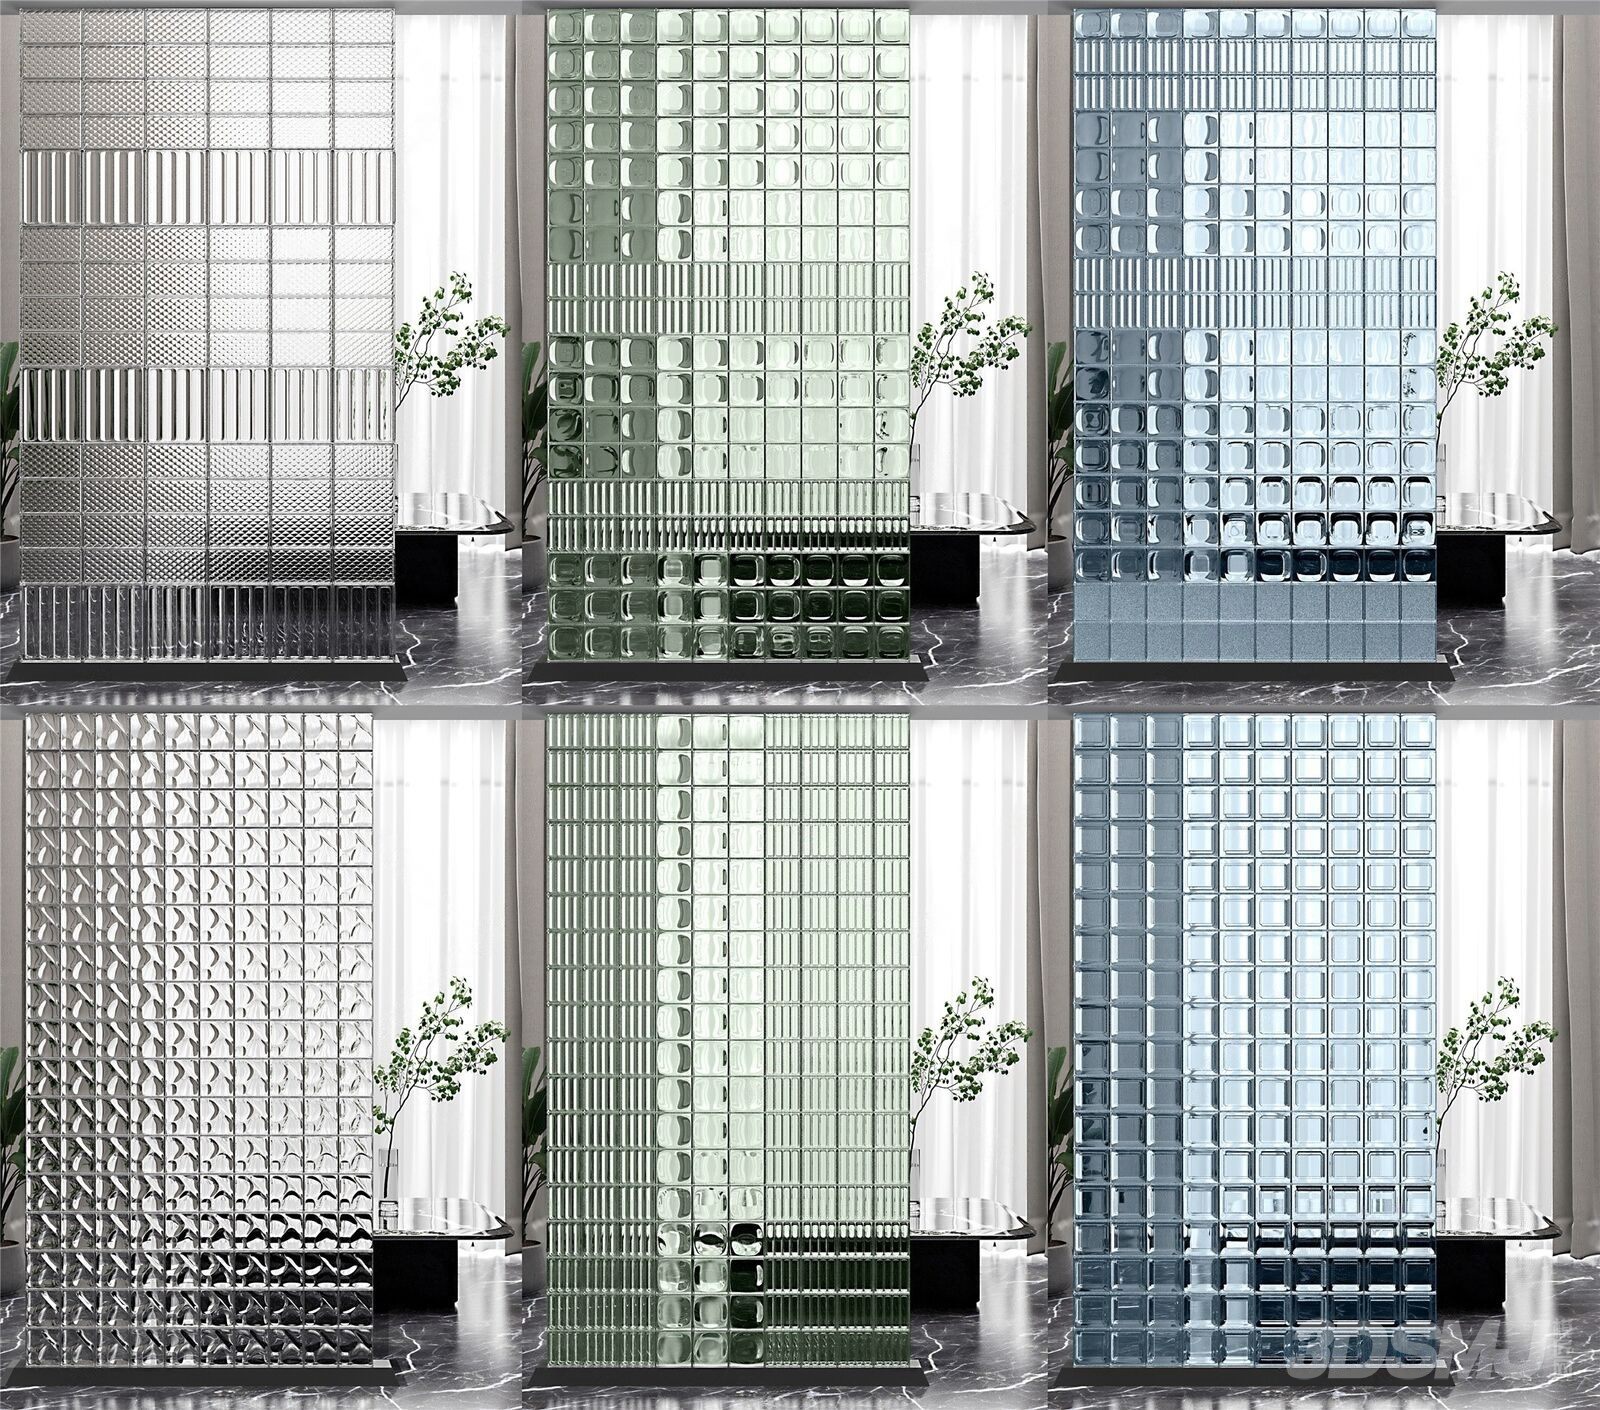 现代玻璃砖隔断组合-3D模型-模匠网,3D模型下载,免费模型下载,国外模型下载